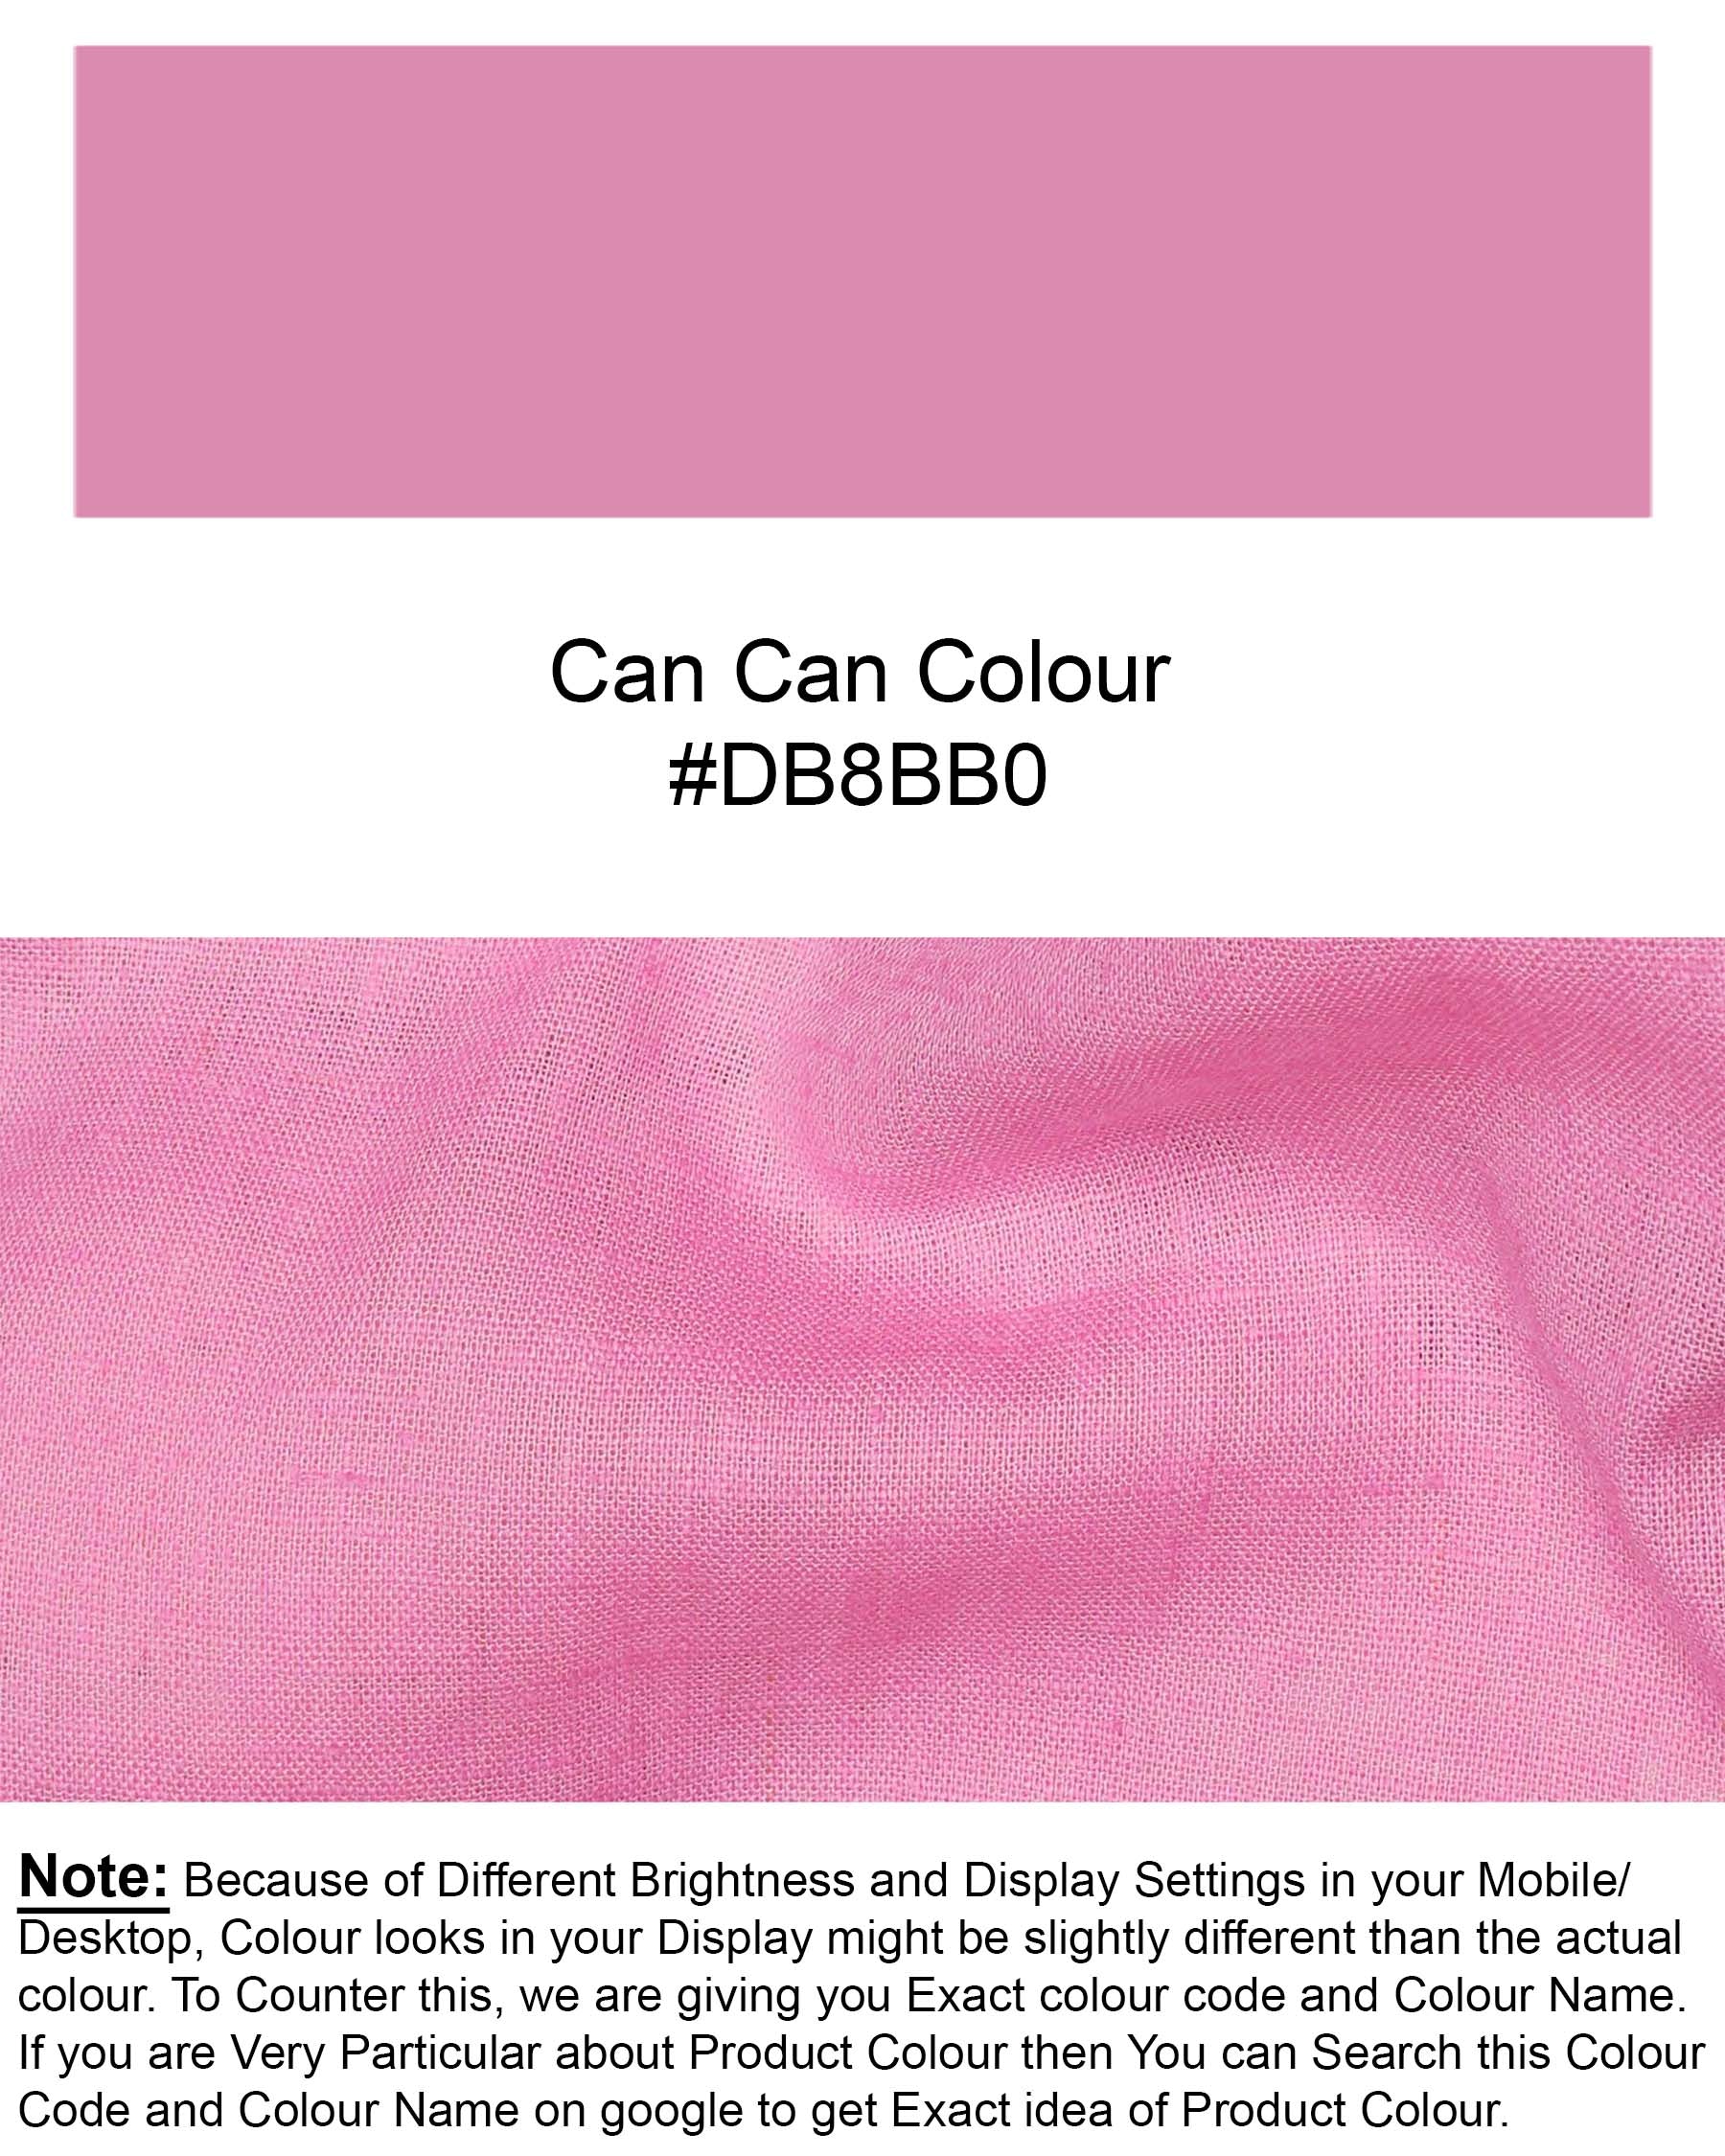 Can Can Pink Luxurious Linen Shirt 7310-BD-BLK-38, 7310-BD-BLK-H-38, 7310-BD-BLK-39, 7310-BD-BLK-H-39, 7310-BD-BLK-40, 7310-BD-BLK-H-40, 7310-BD-BLK-42, 7310-BD-BLK-H-42, 7310-BD-BLK-44, 7310-BD-BLK-H-44, 7310-BD-BLK-46, 7310-BD-BLK-H-46, 7310-BD-BLK-48, 7310-BD-BLK-H-48, 7310-BD-BLK-50, 7310-BD-BLK-H-50, 7310-BD-BLK-52, 7310-BD-BLK-H-52